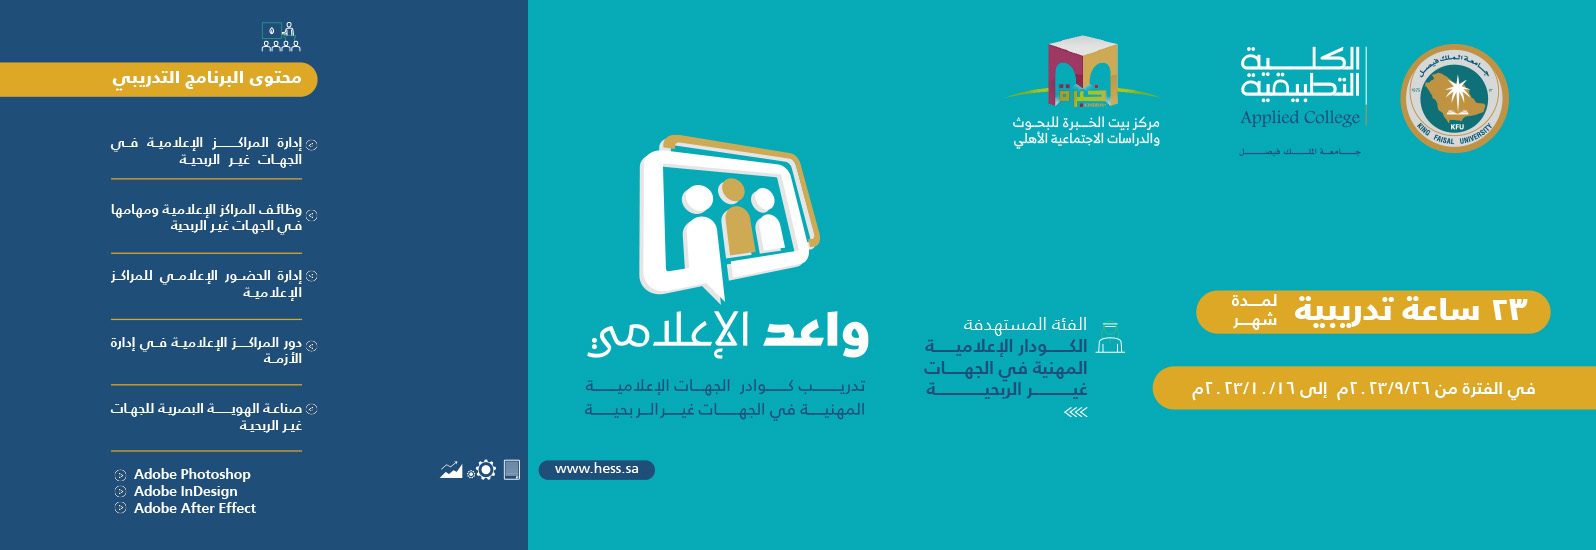 مركز_خبرة بالشراكة مع الكلية التطبيقية بجامعة الملك فيصل، يقدم 4 برامج  مهنية لتأهيل الكوادر الإعلامية